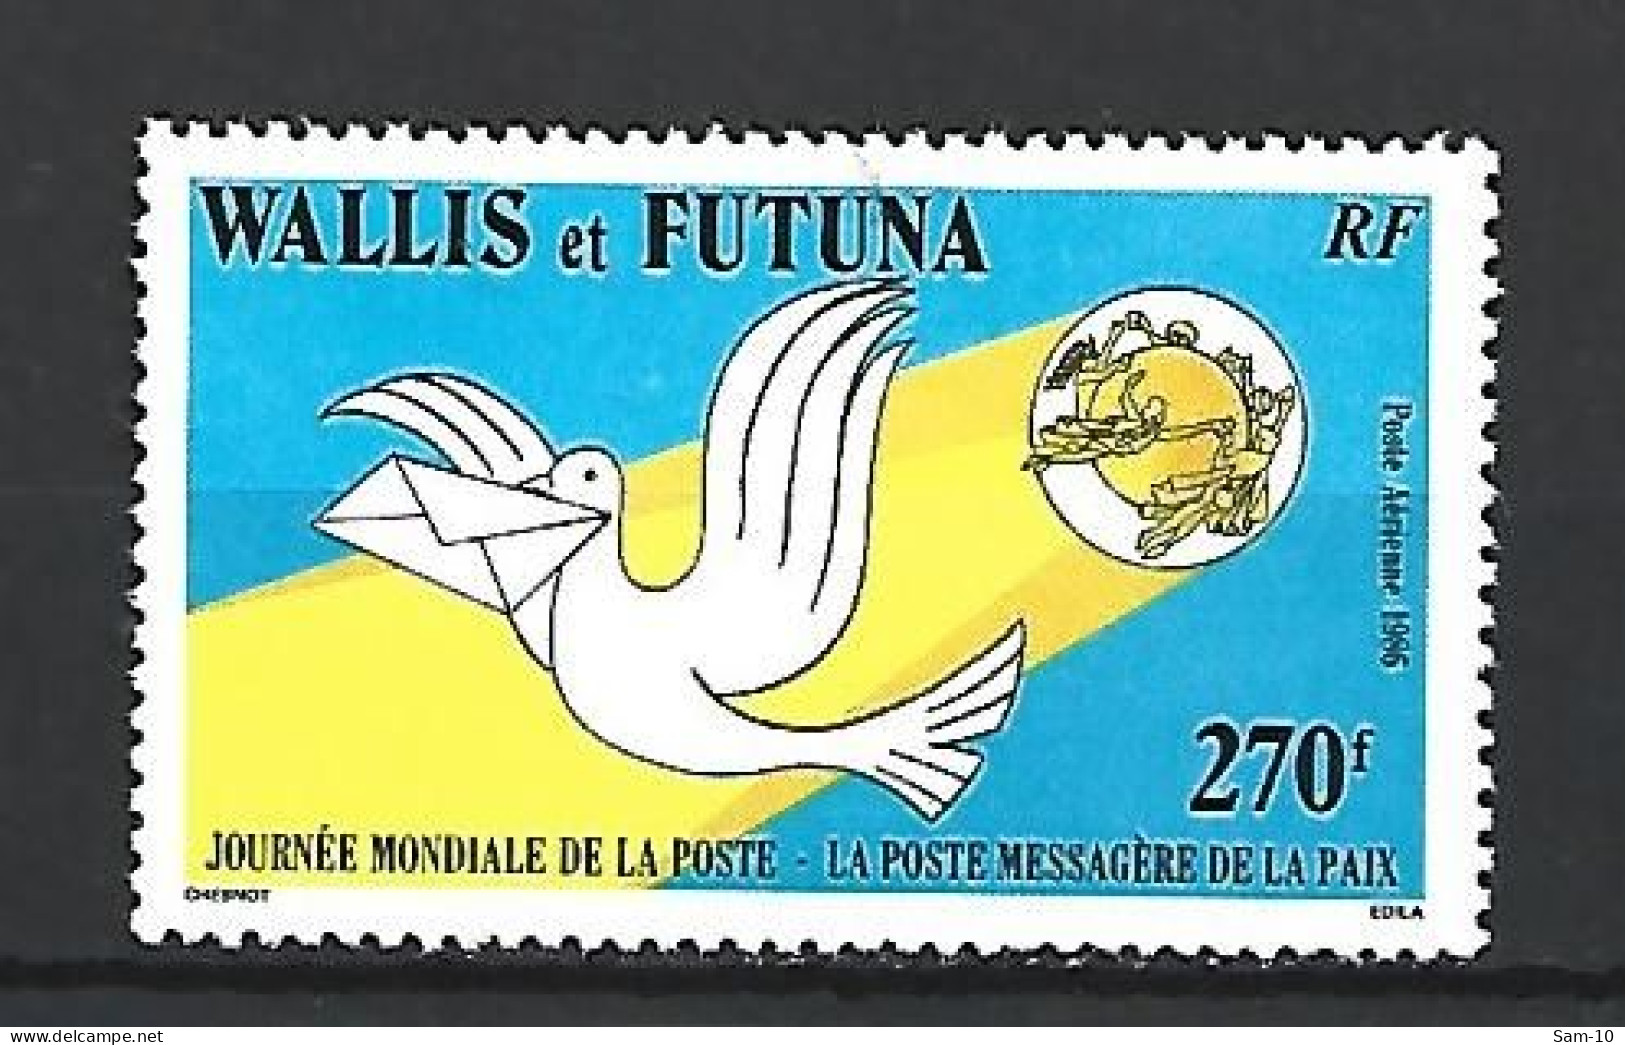 Timbre Wallis & Futuna Neuf **  P-a  N 153 - Neufs